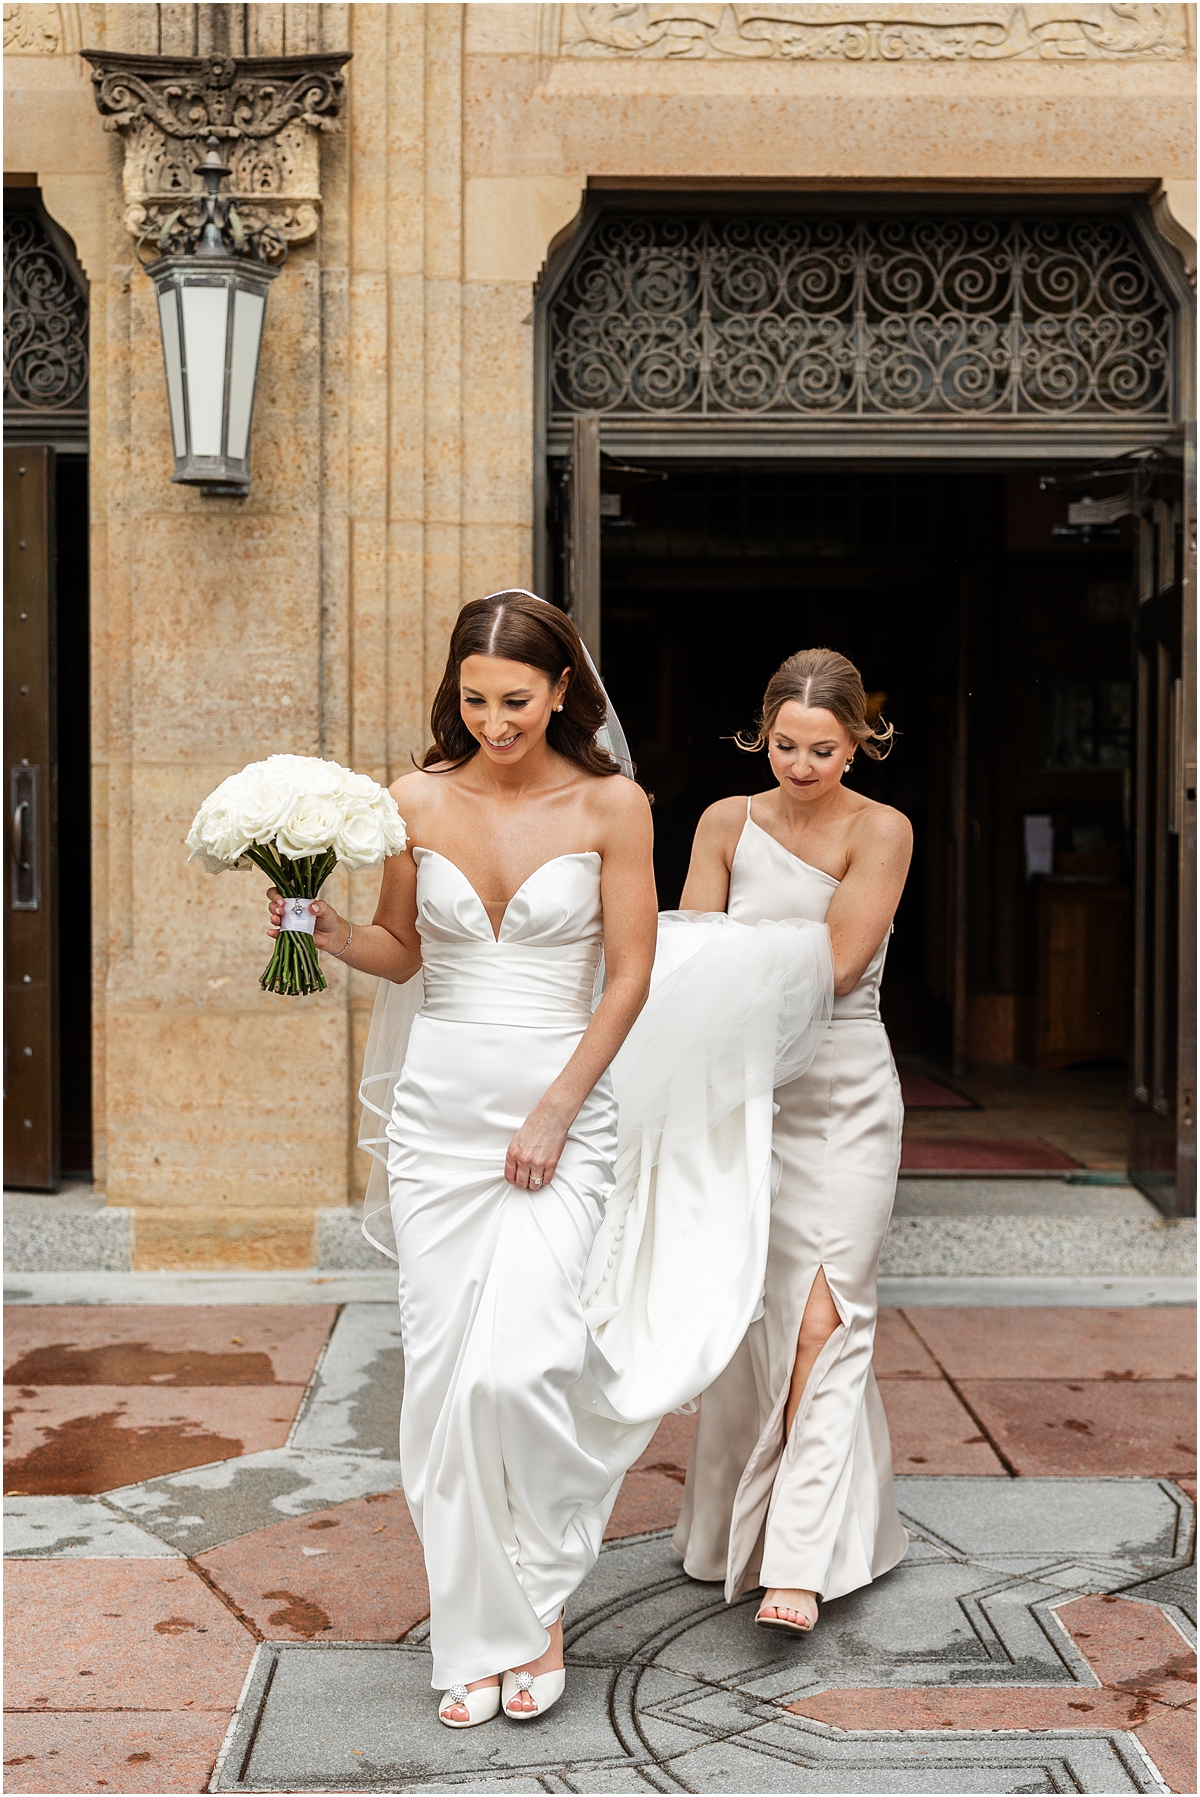 bridesmaid helps bride with dress